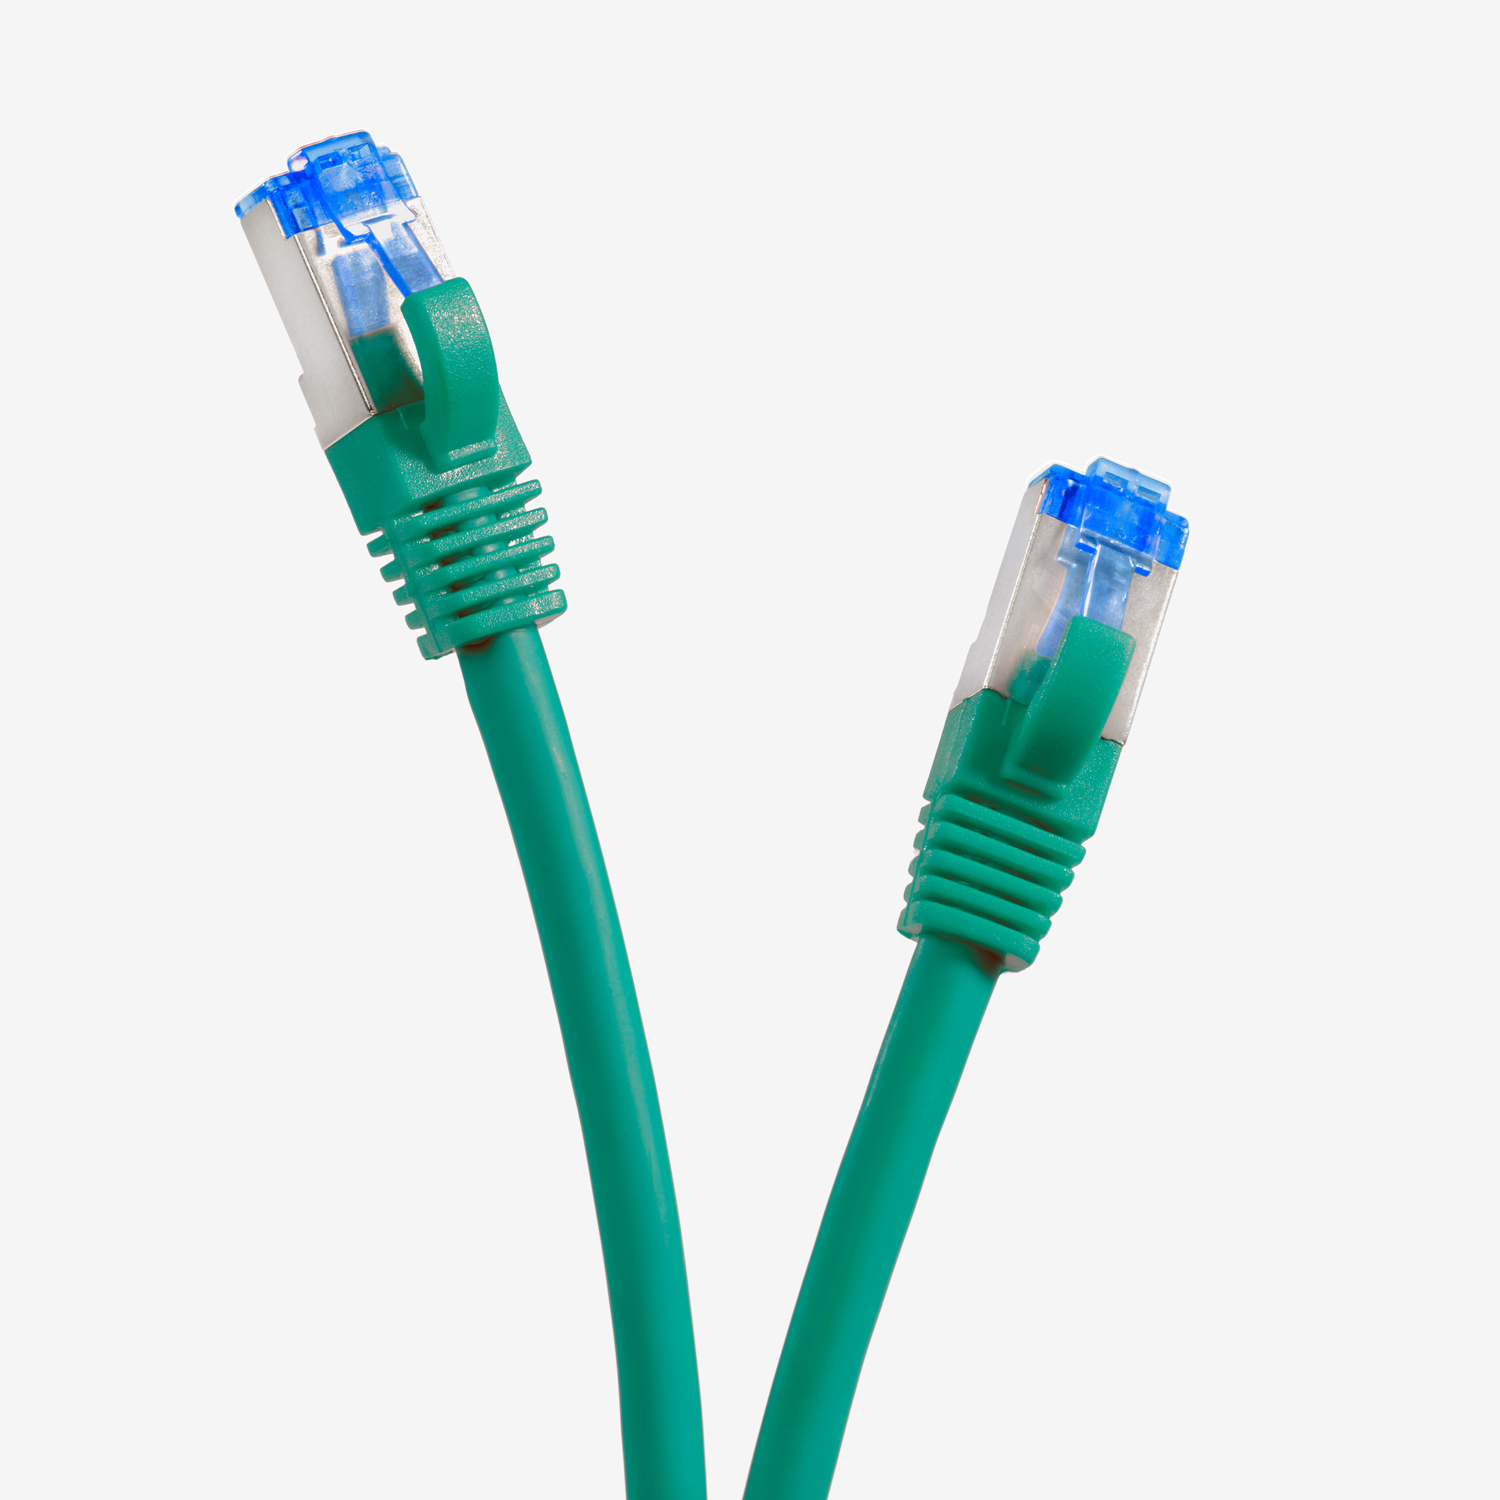 TPFNET 10m Patchkabel / Netzwerkkabel grün, 10GBit, Netzwerkkabel, 10 m S/FTP